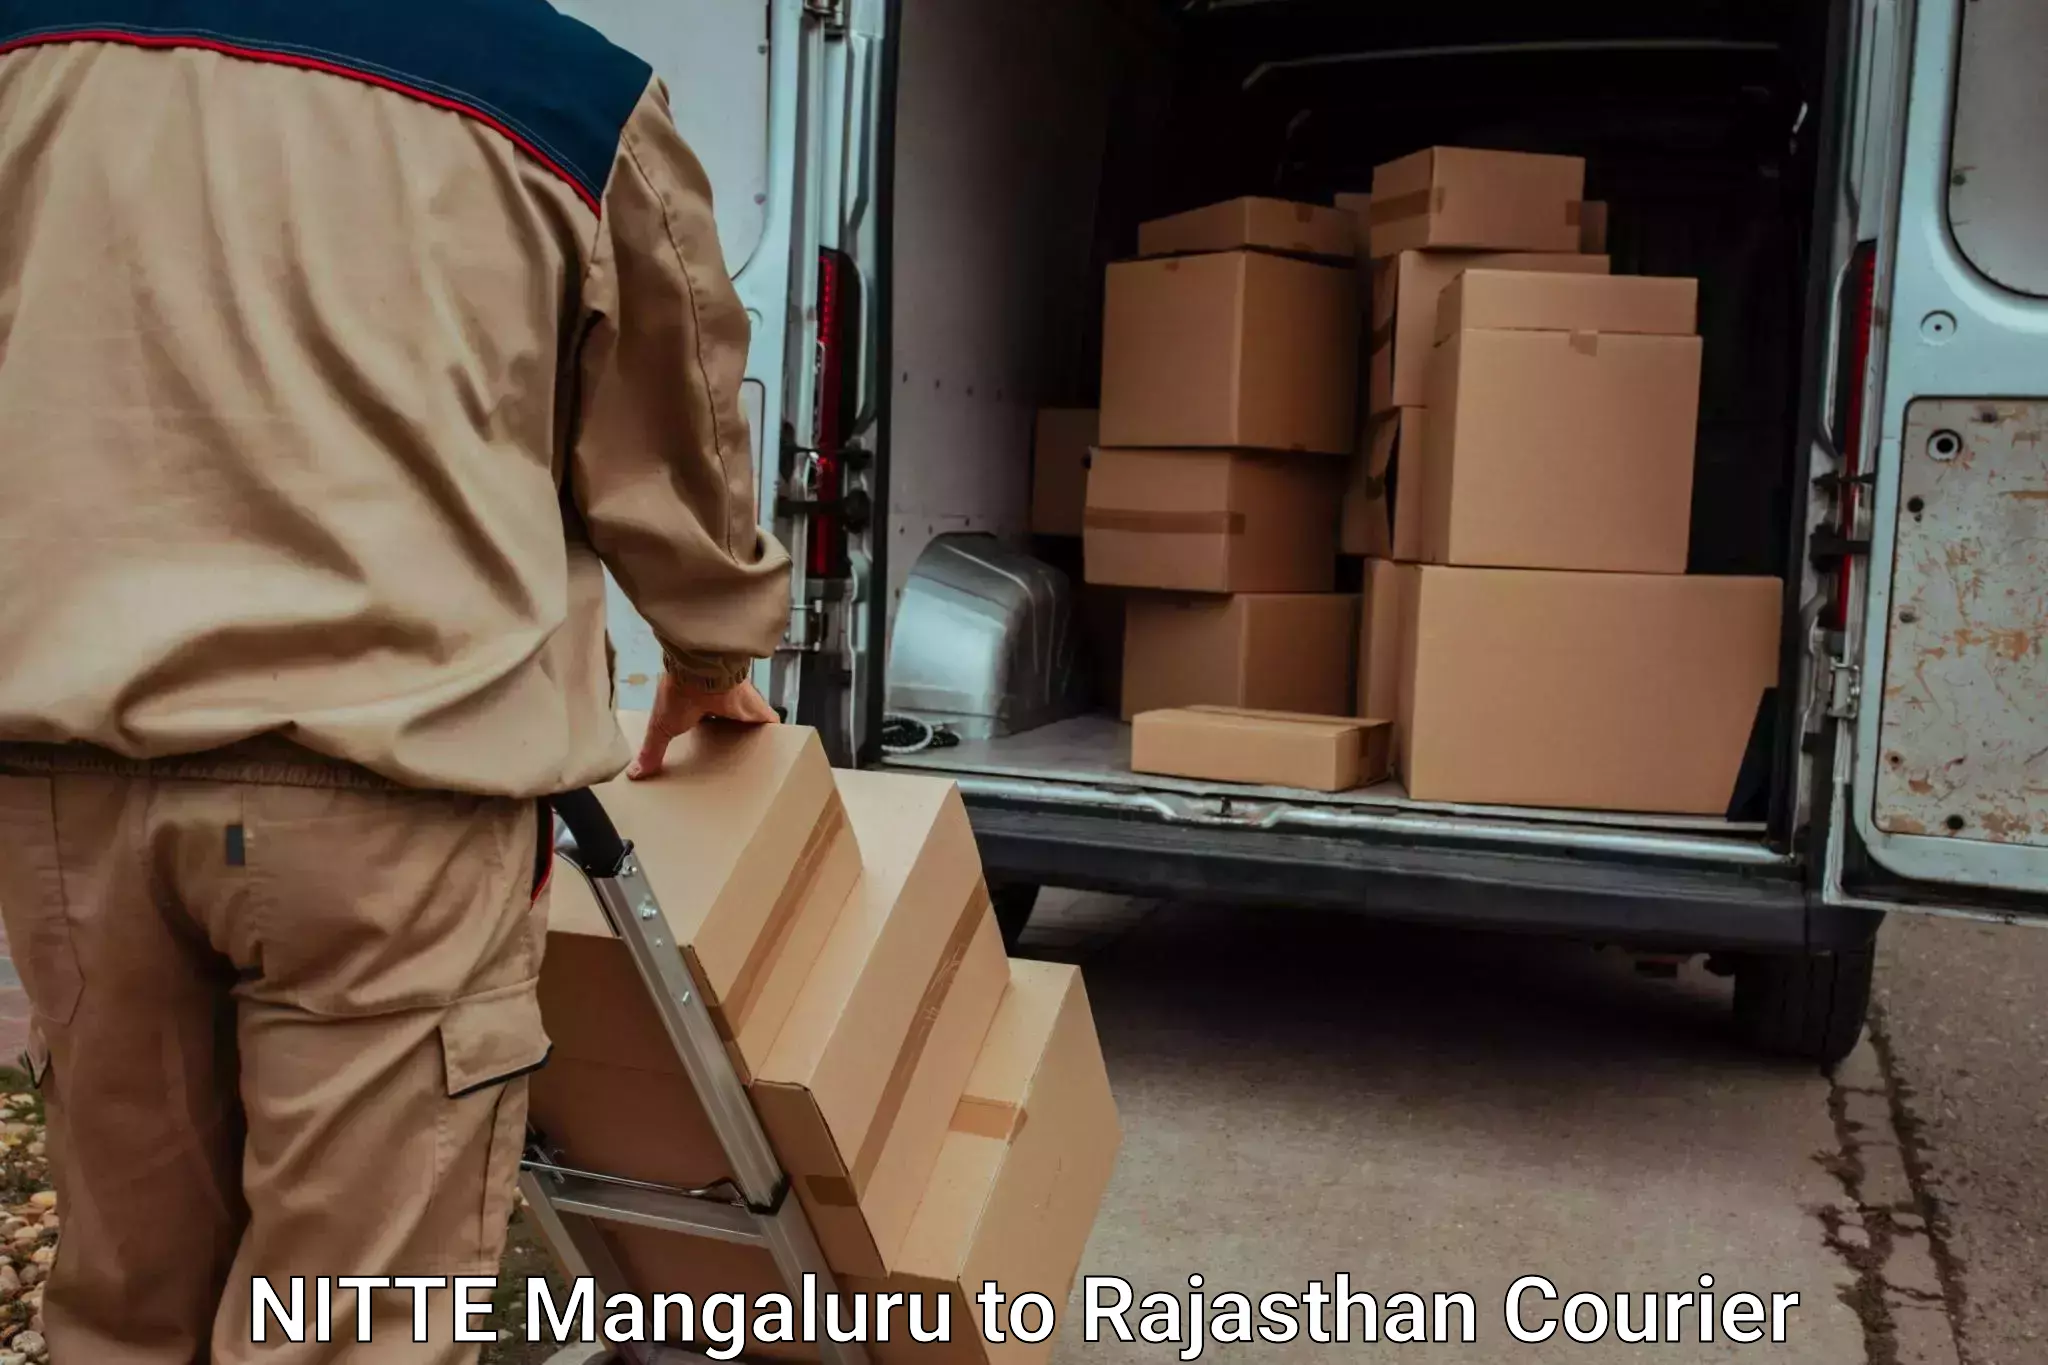 Baggage transport network NITTE Mangaluru to Kekri